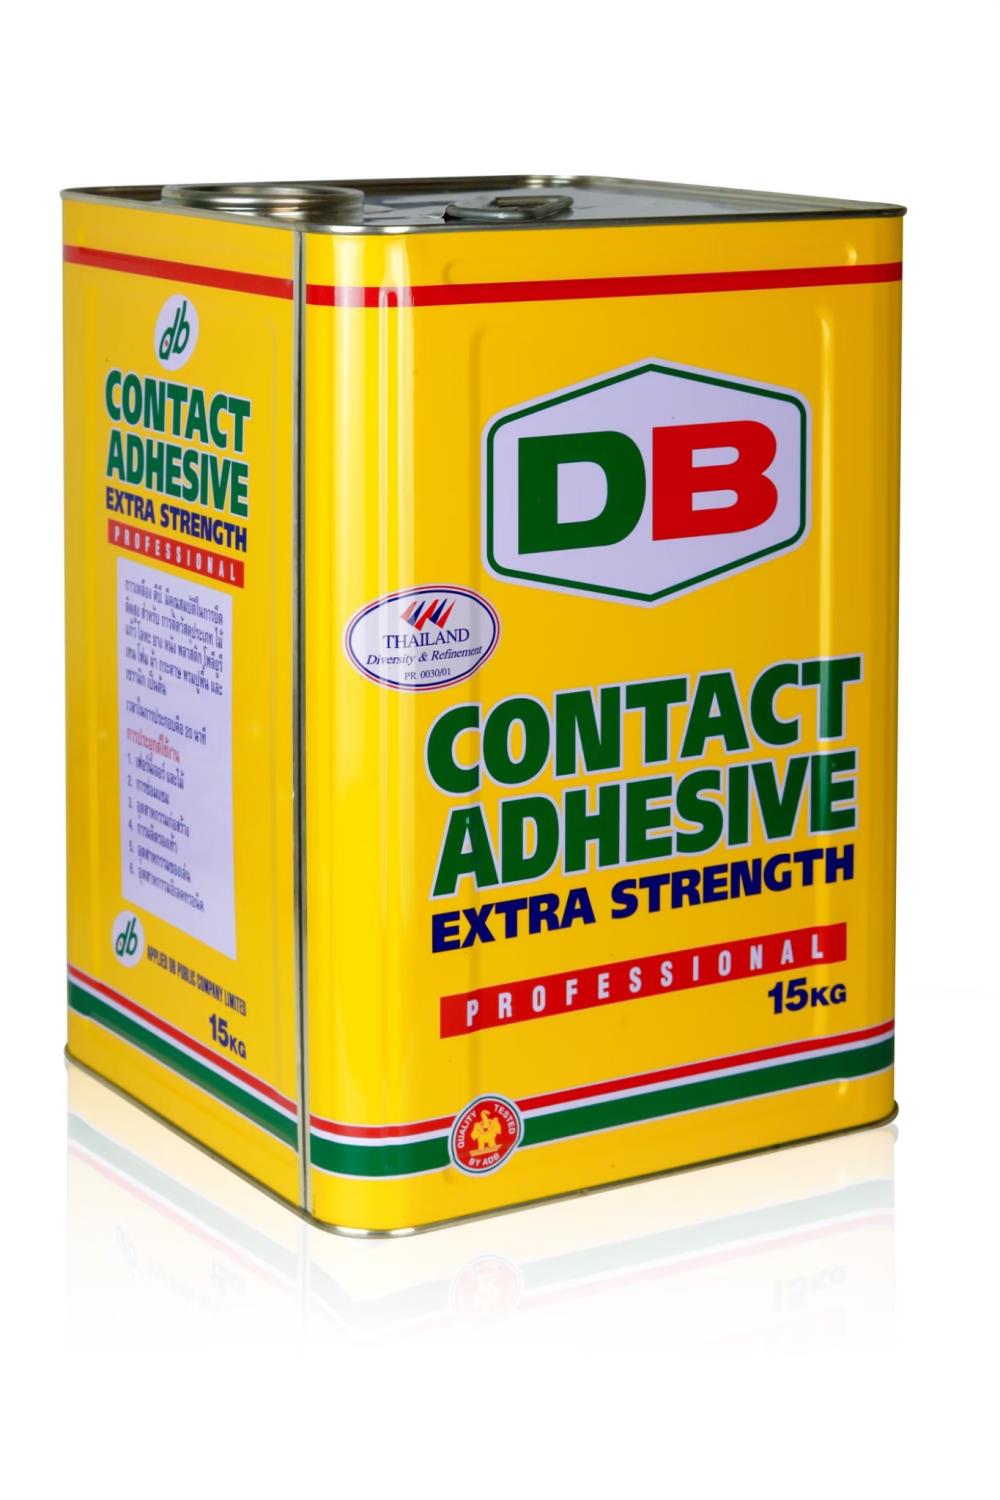 ADB DB กาวยางหรือกาวเหลือง (Contact adhesive),กาวยาง กาวเหลือง กาวอุตสาหรรม Adhesives,ADB,Sealants and Adhesives/Adhesives